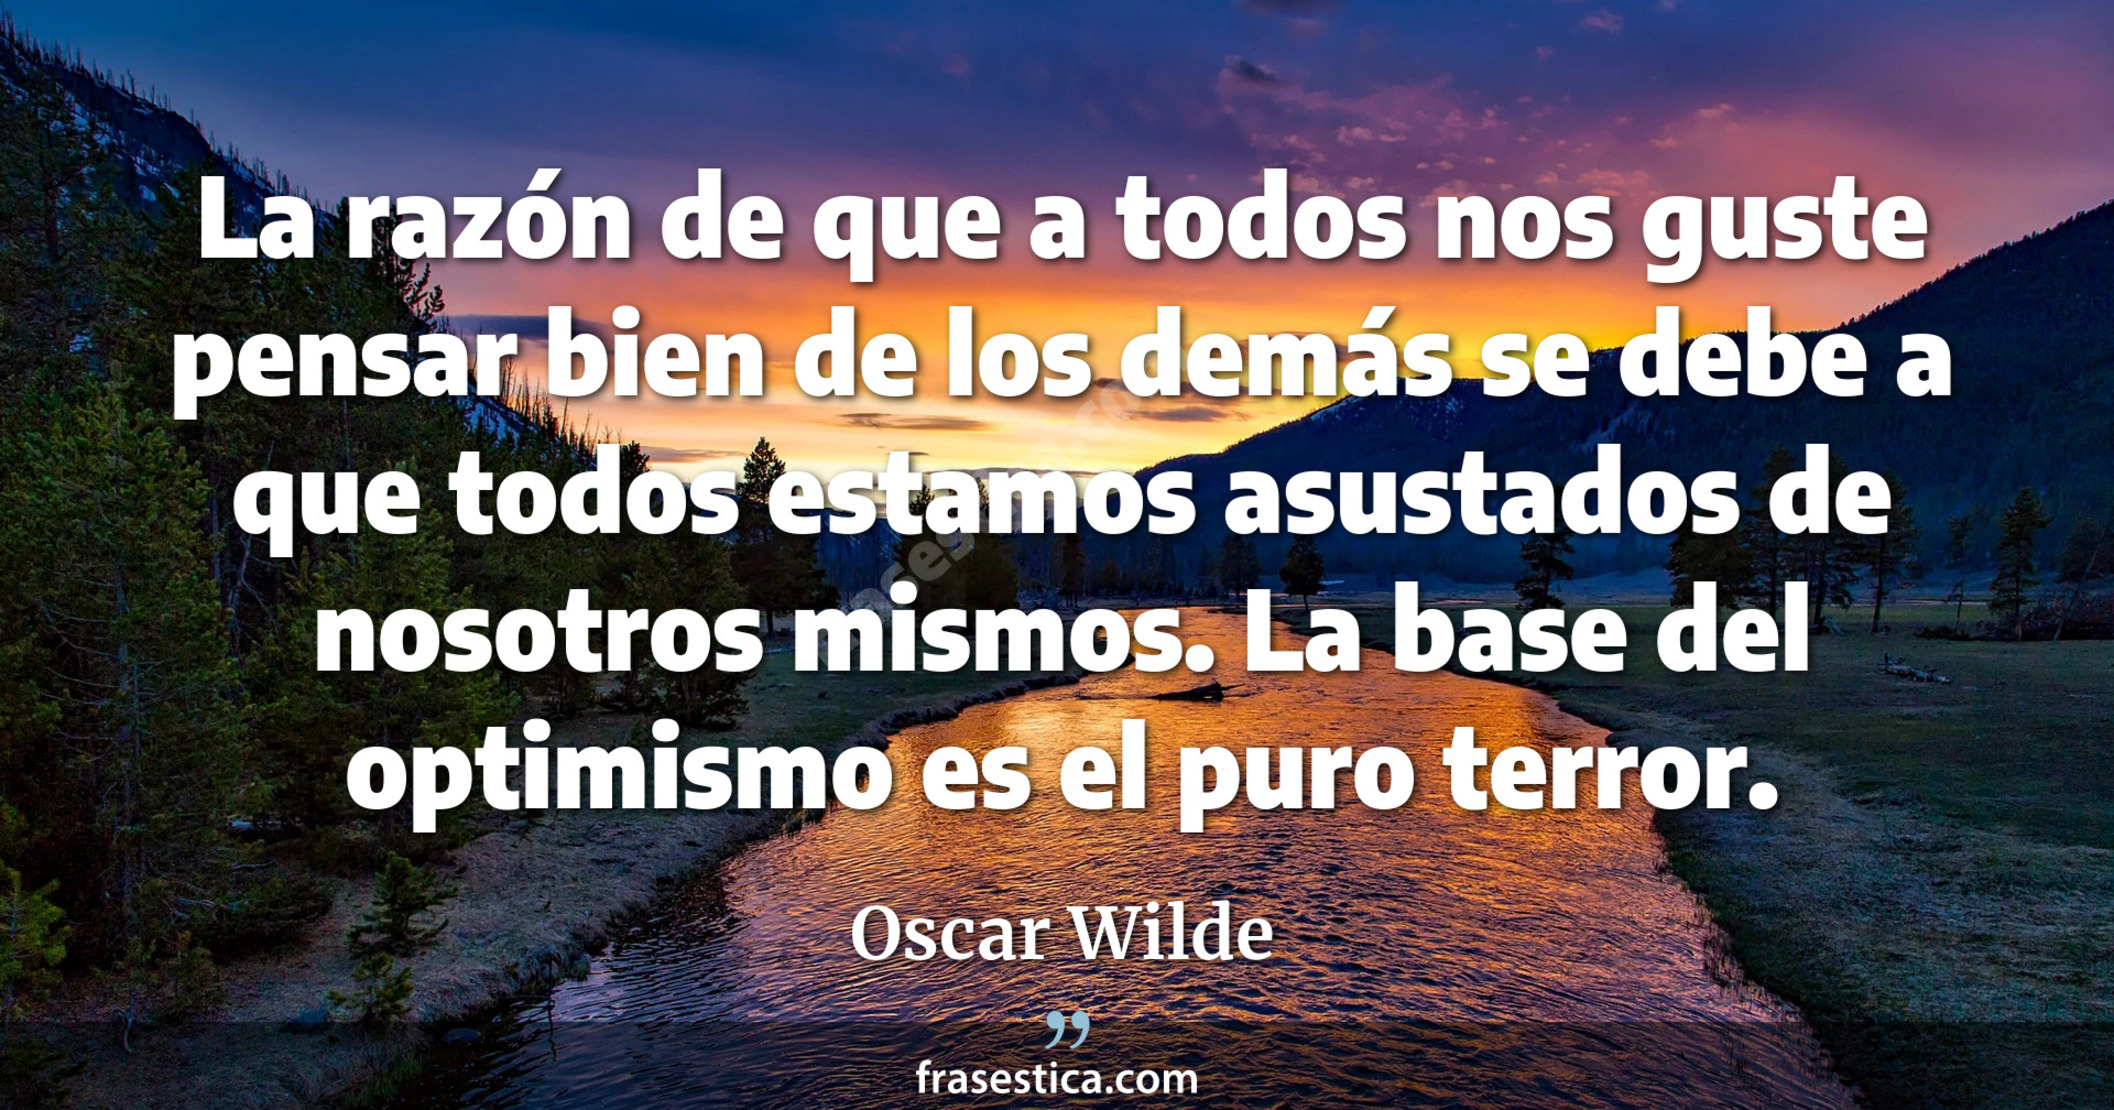 La razón de que a todos nos guste pensar bien de los demás se debe a que todos estamos asustados de nosotros mismos. La base del optimismo es el puro terror.  - Oscar Wilde